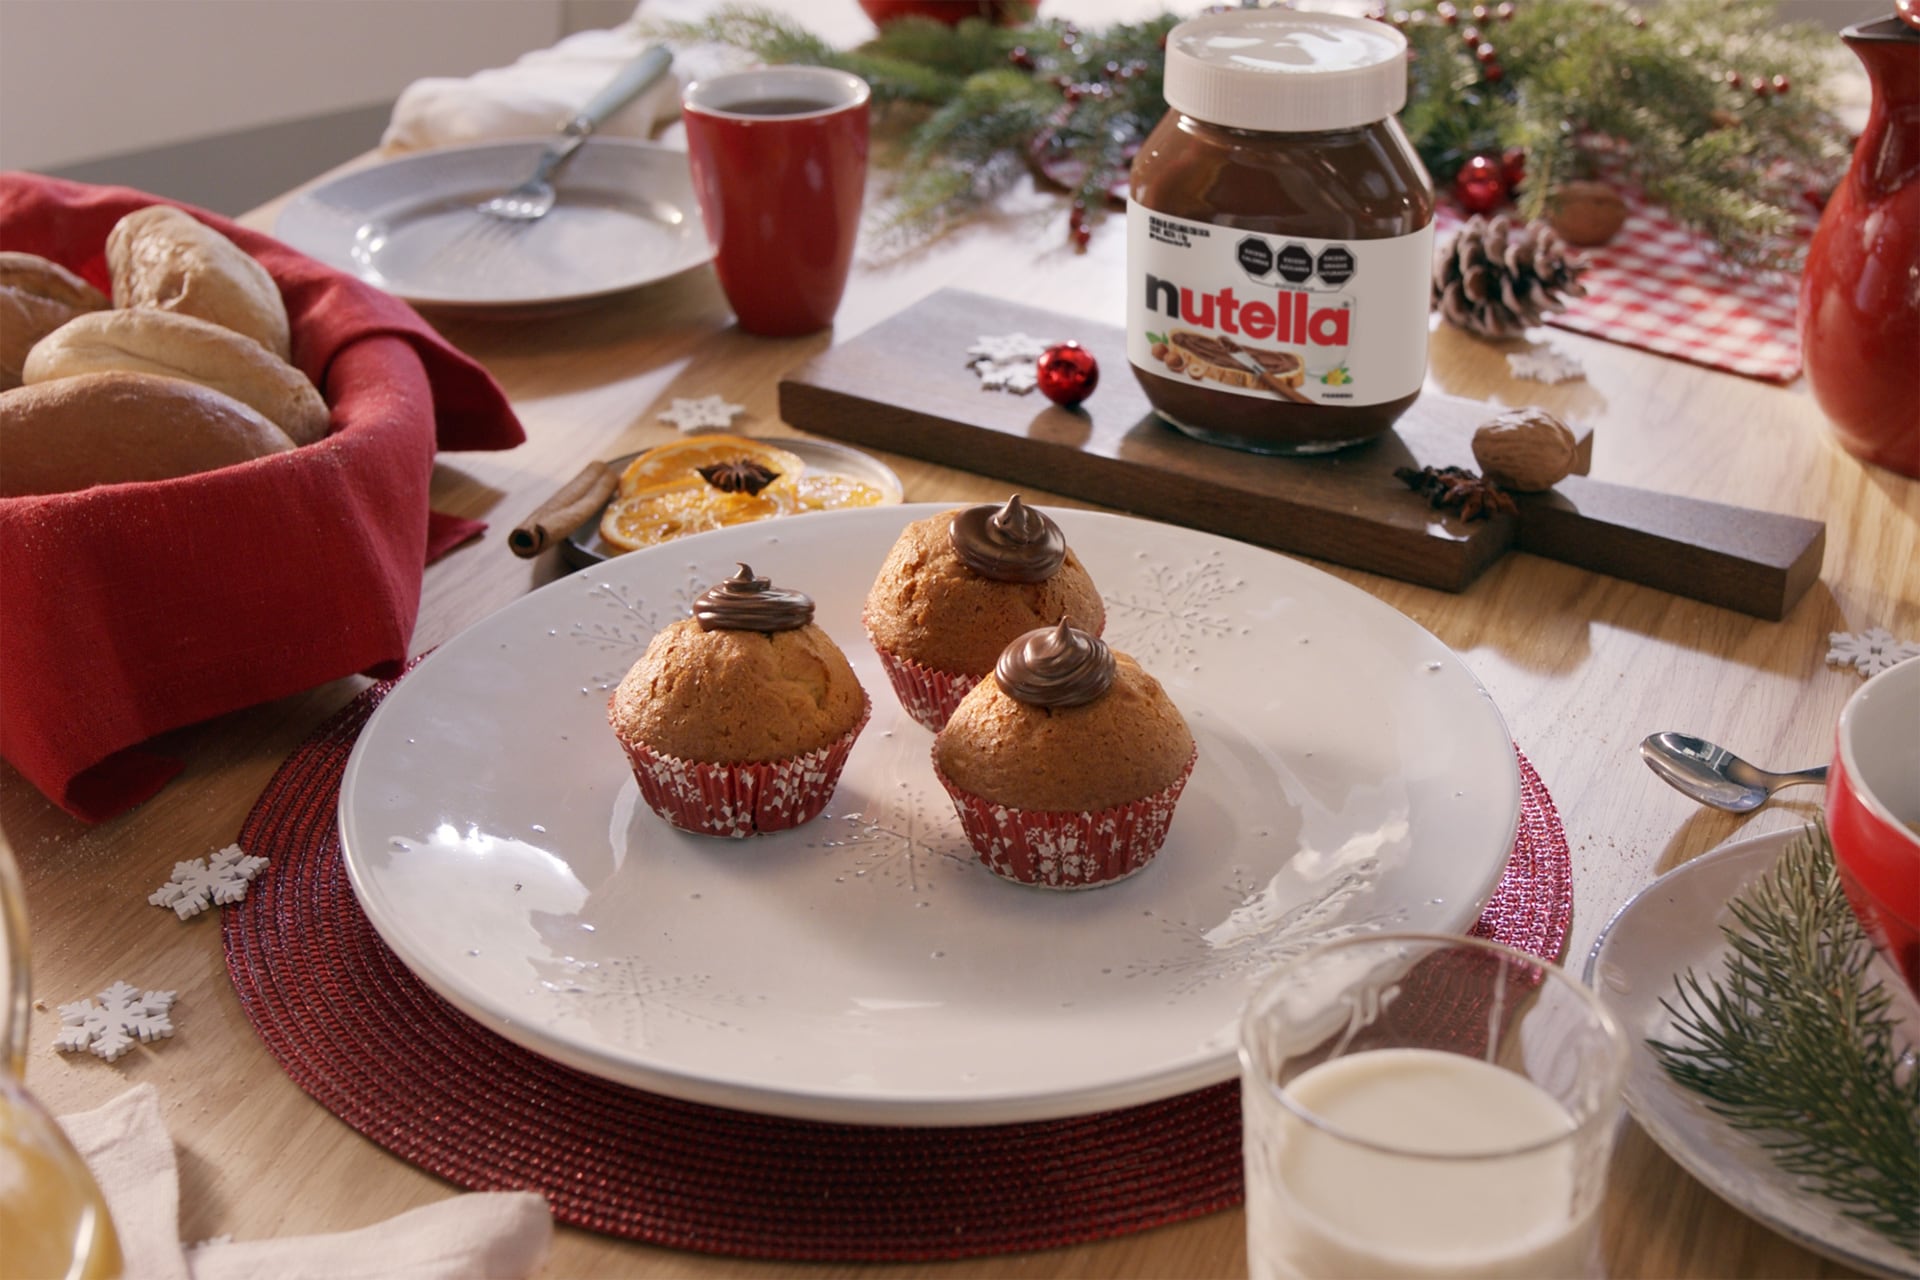 Receta de Muffins con Nutella®